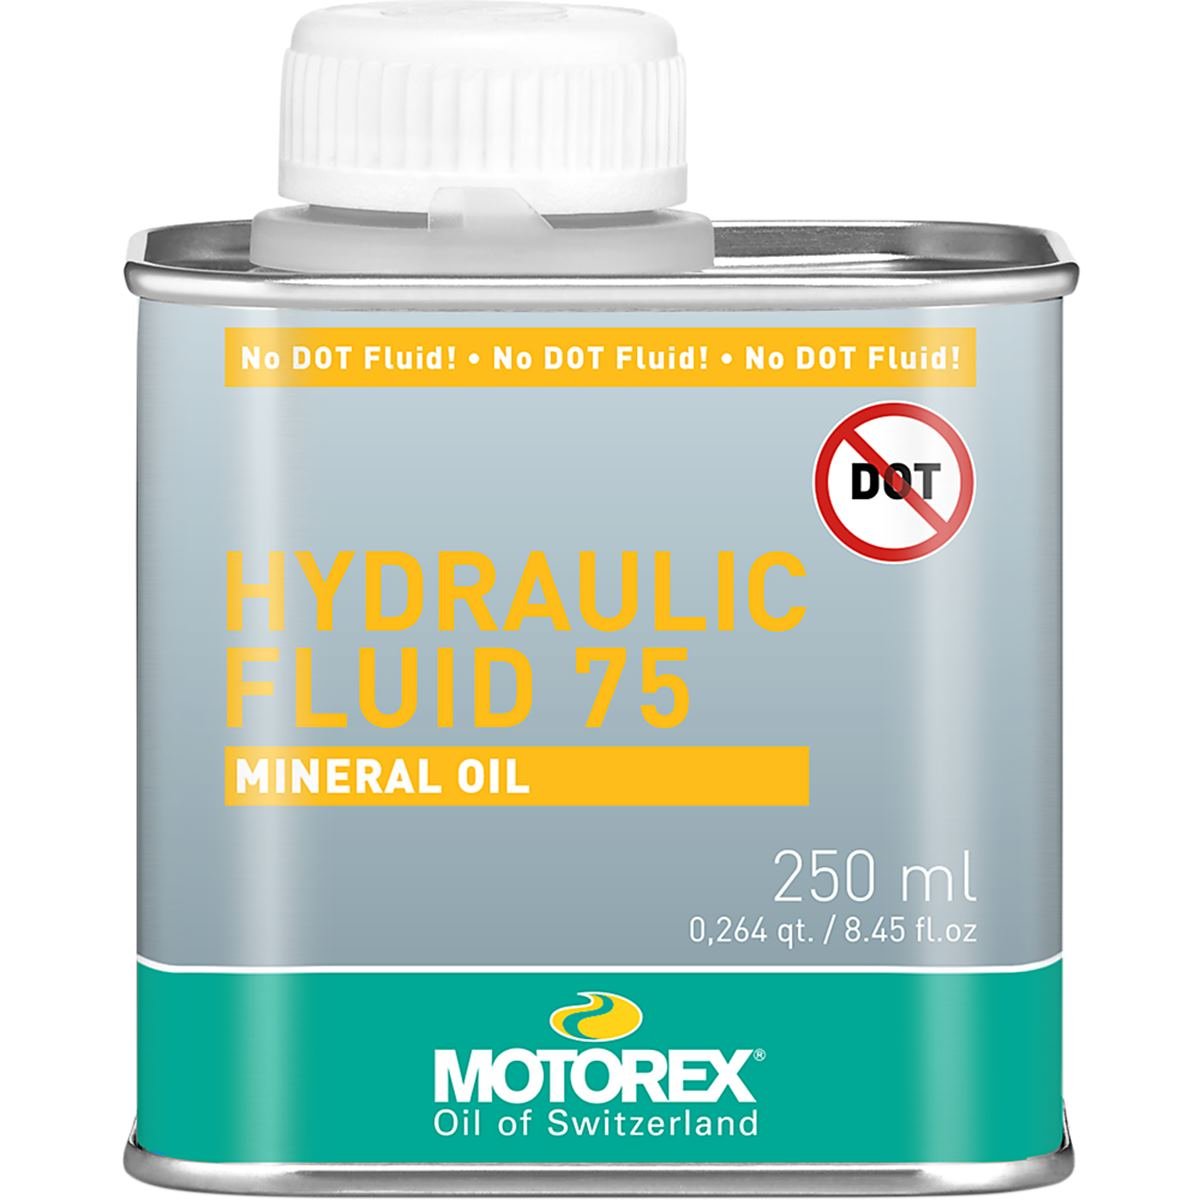 Motorex Huile minérale Fluid 75 250 ml